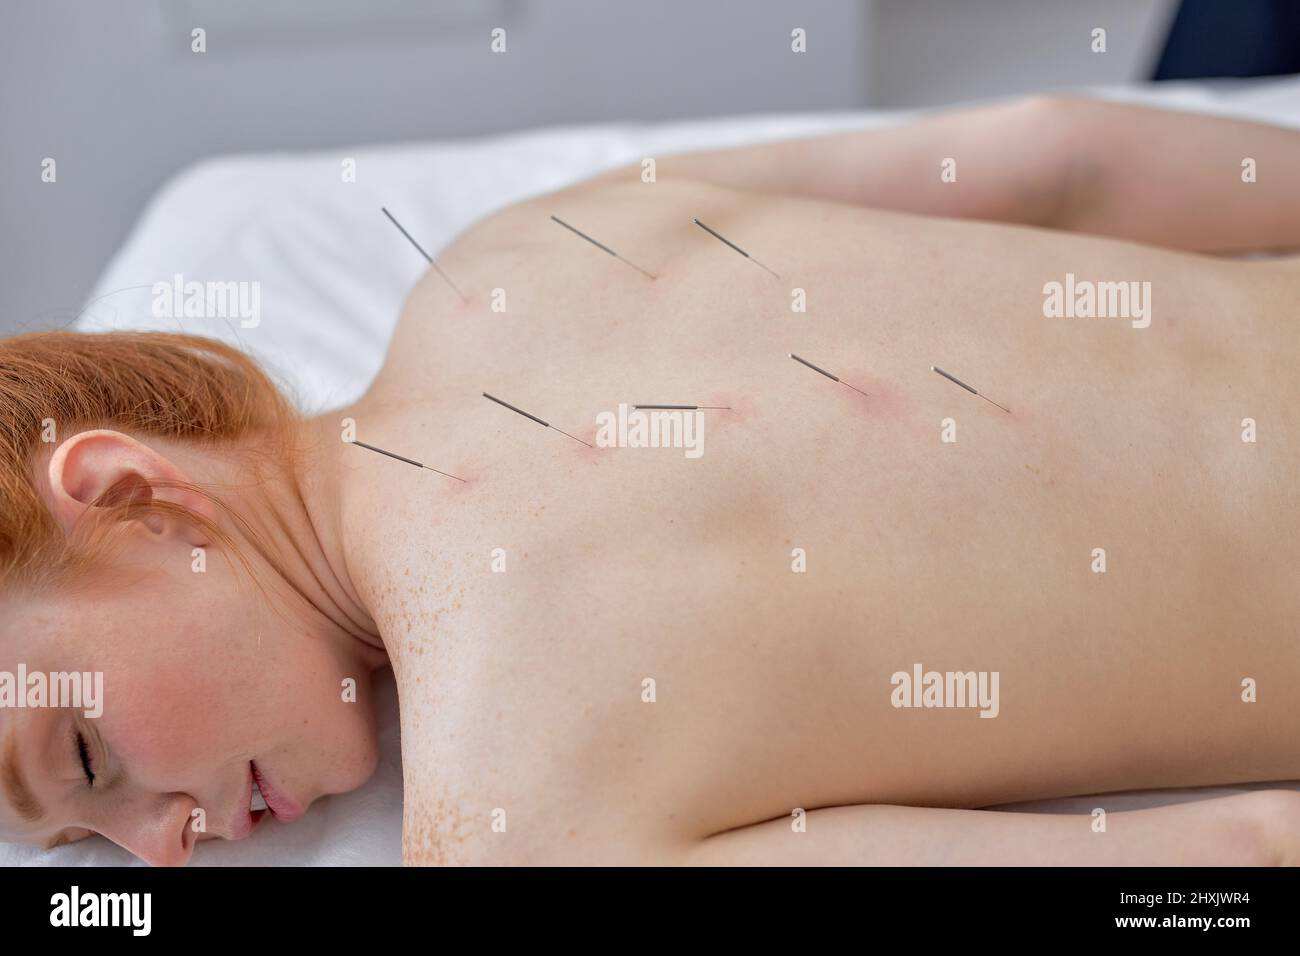 terapia de acupuntura en los hombros de la columna vertebral para la mujer cliente. mujer sometida a tratamiento de acupuntura con una línea de agujas finas insertadas en la delgada b Foto de stock